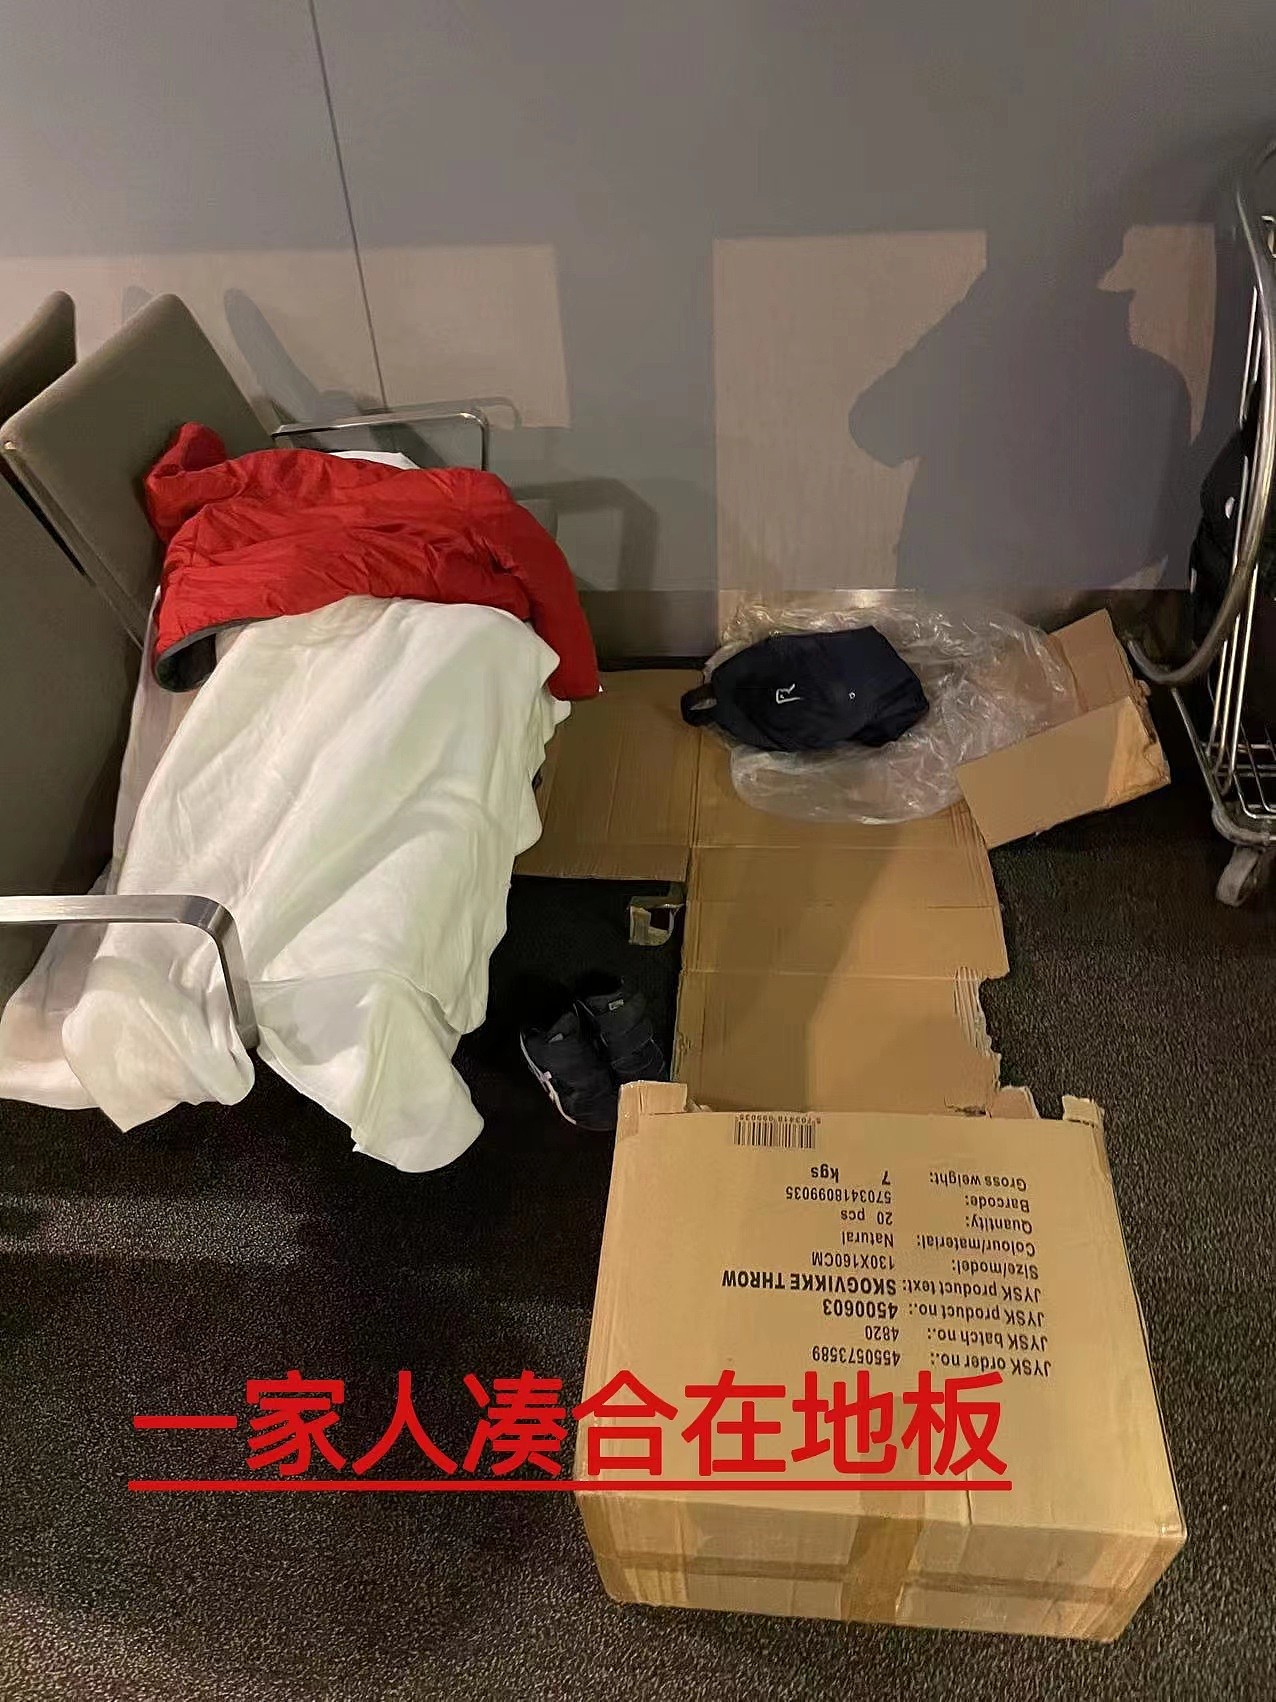 54名中国乘客滞留哥本哈根机场：疑“检测样本遭污染”，老人孩子睡在候机大厅，一周前也曾发生类似事件